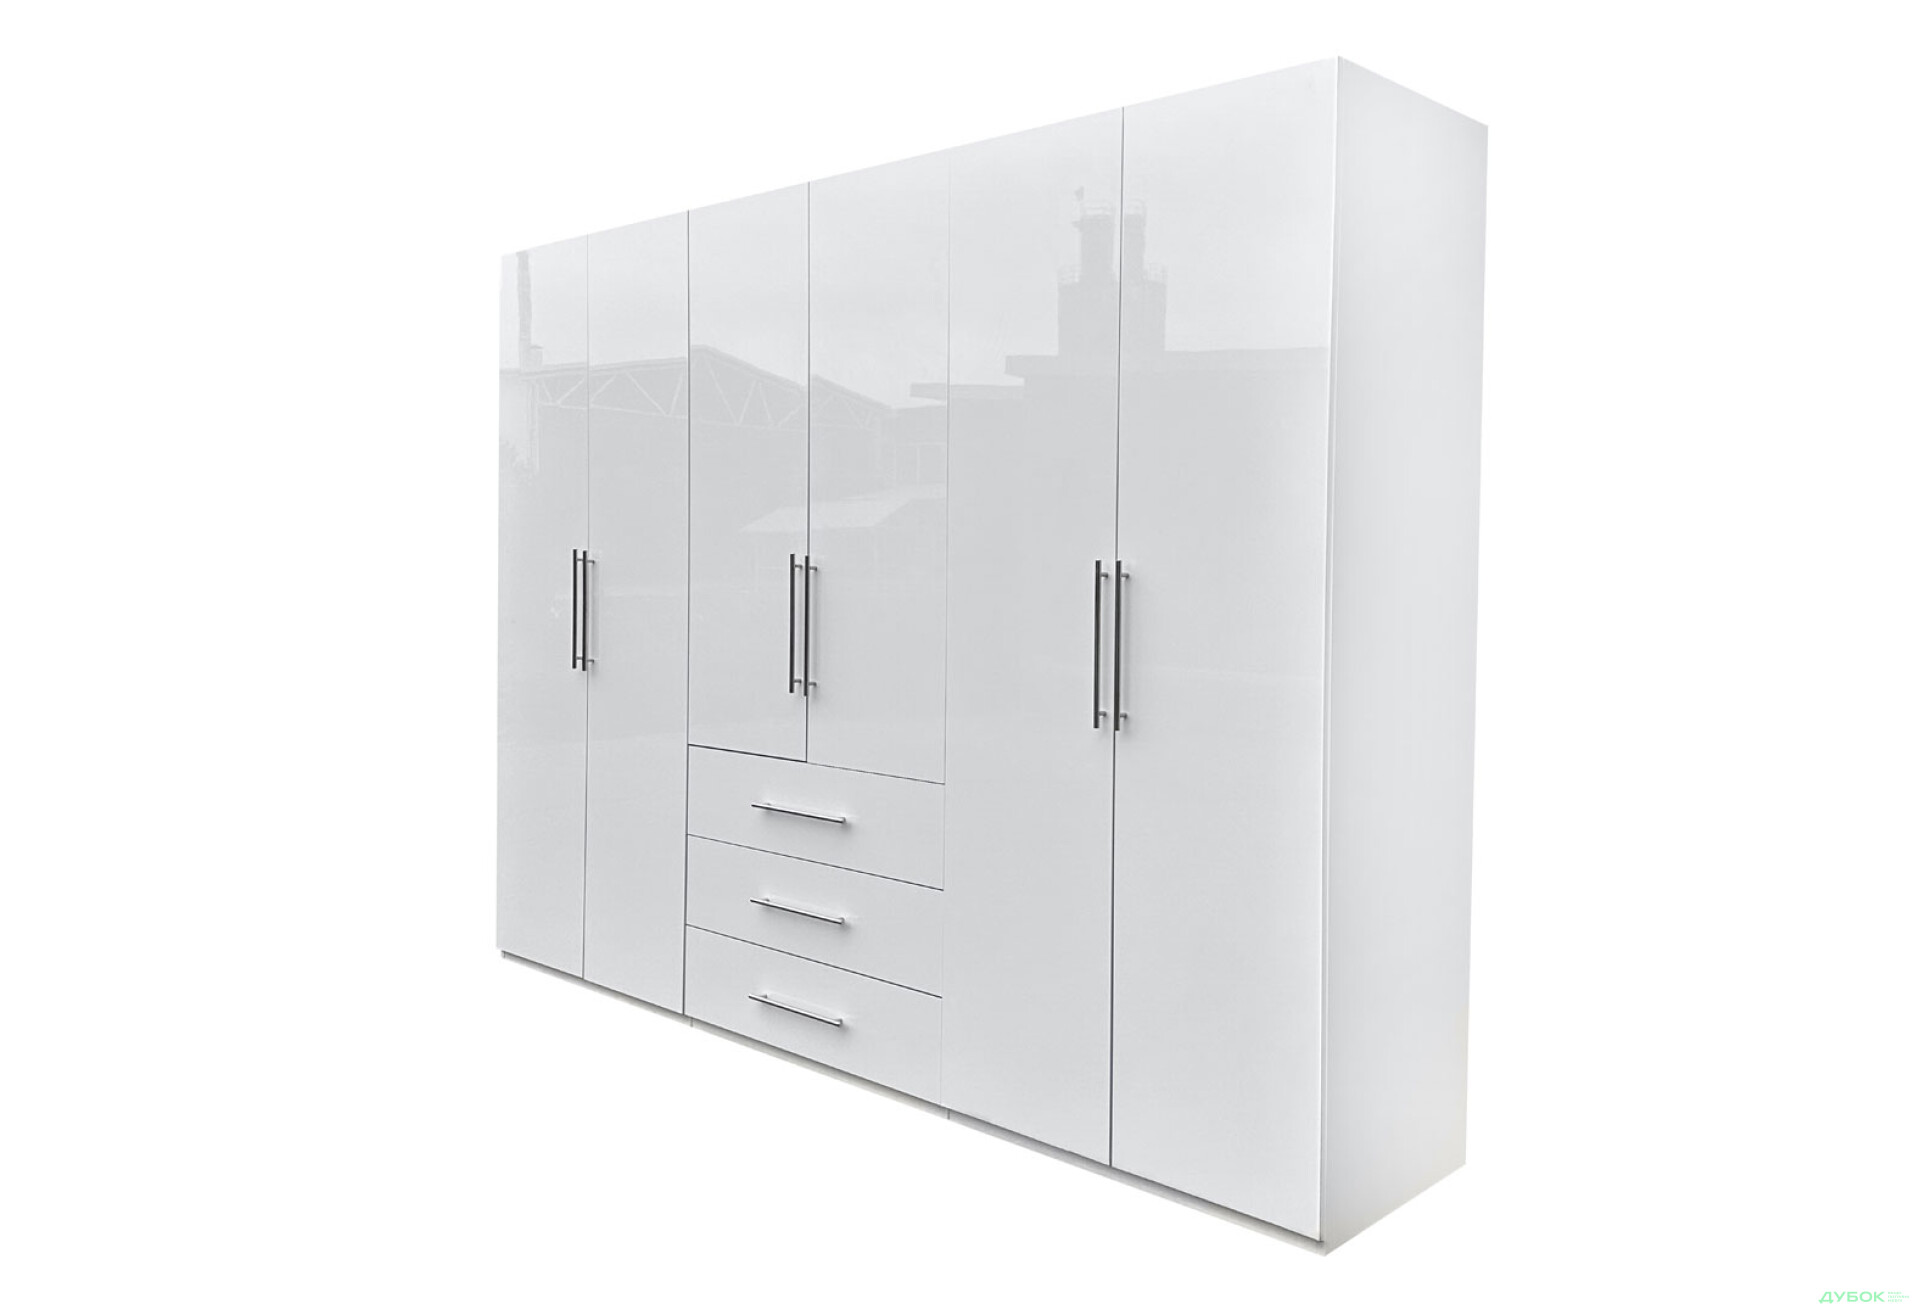 Фото 1 - Шкаф MiroMark Магнум 6-дверный з 3 ящиками 294 см, белый